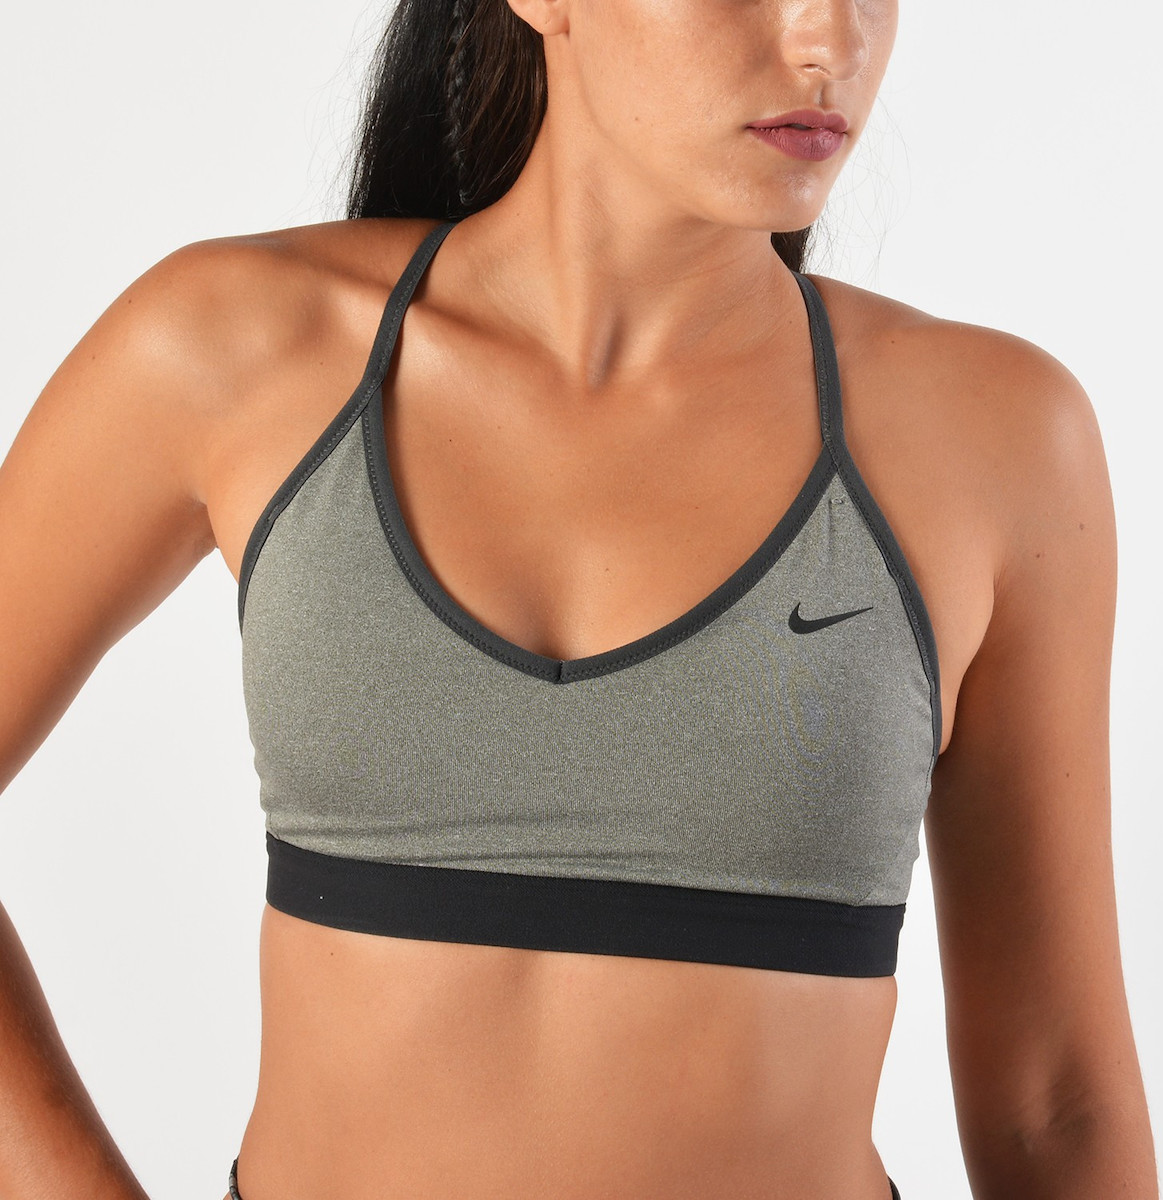 Nike Dri-Fit Indy Γυναικείο Αθλητικό Μπουστάκι Μαύρο με Επένδυση & Ελαφριά  Ενίσχυση CZ4456-010